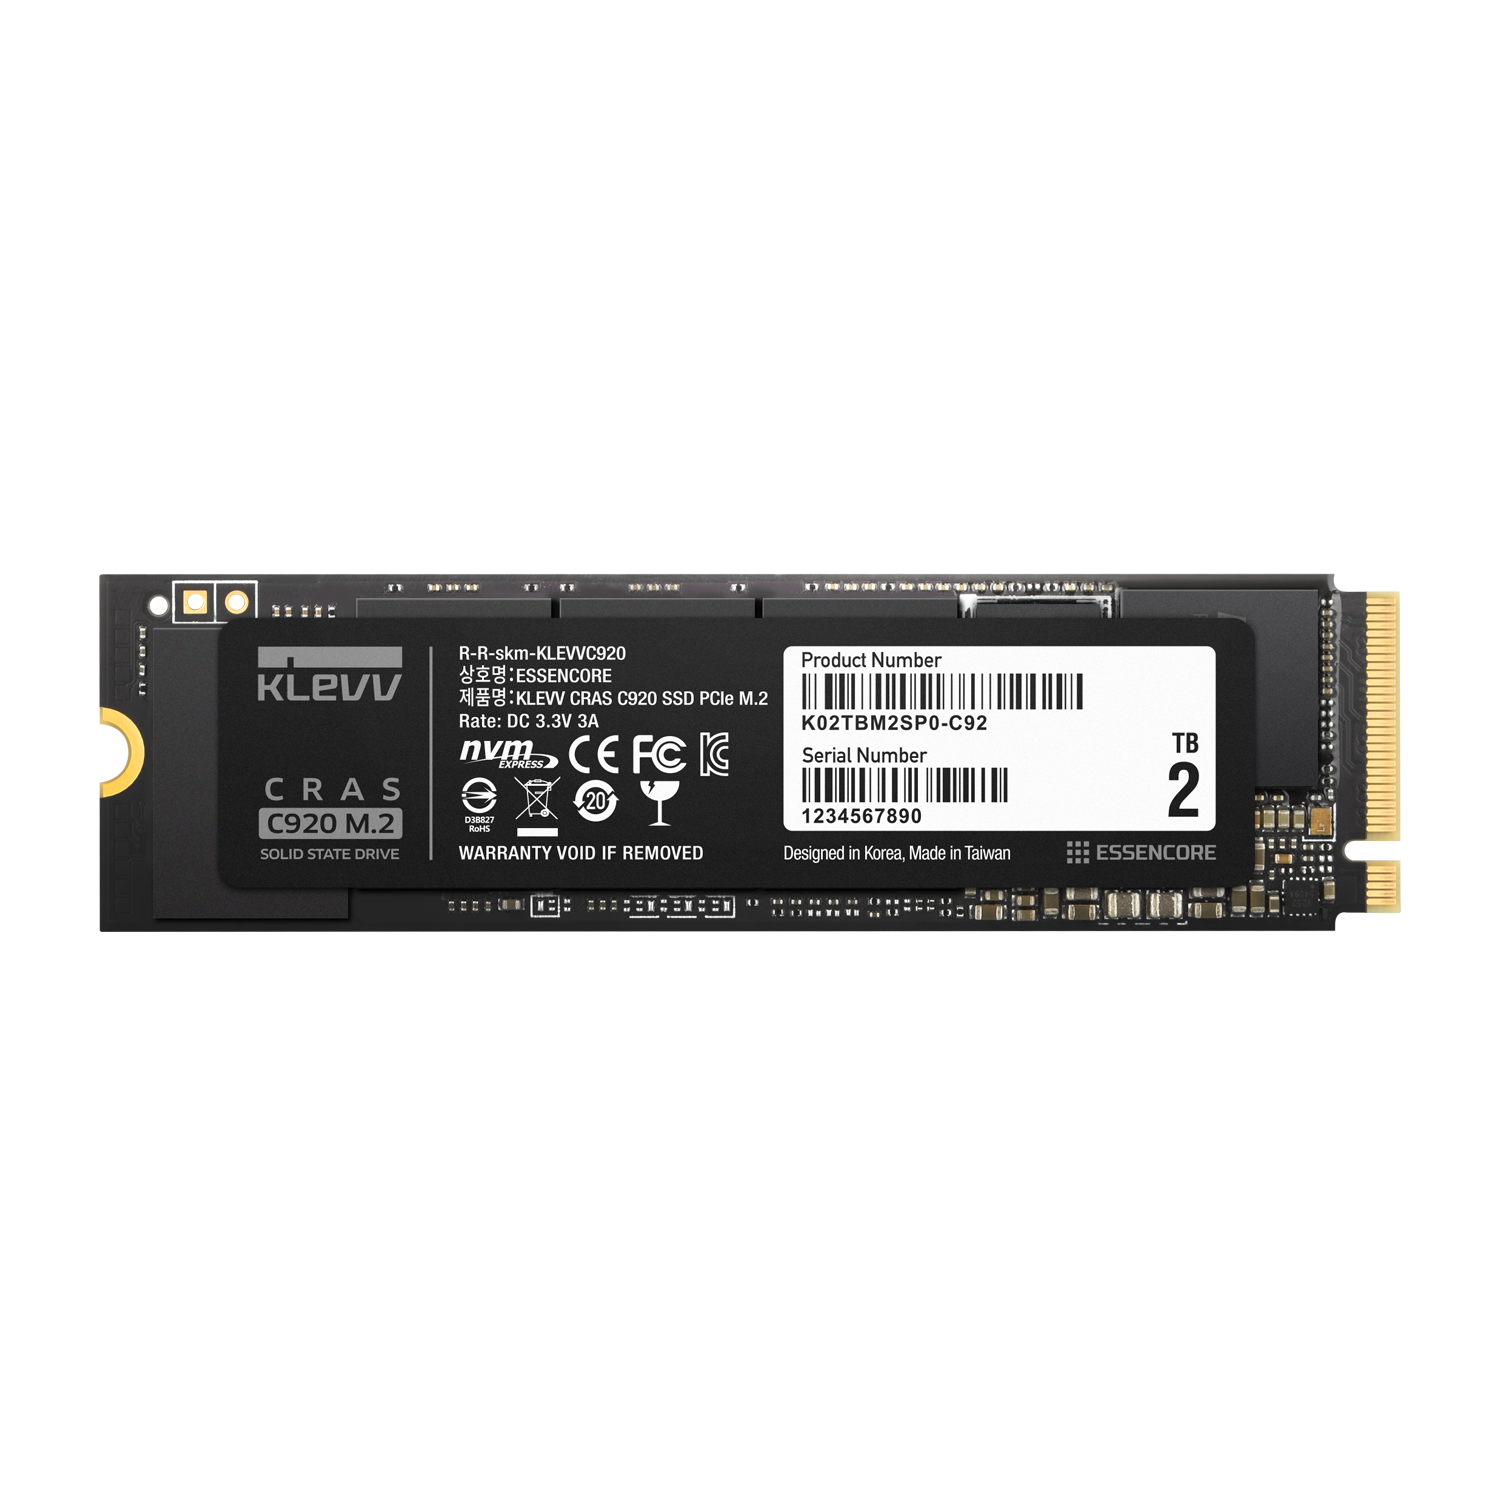 ESSENCORE KLEVV、次世代PCIe(R)テクノロジーの DRAM内蔵型SSD CRASシリーズ「C920、C720」Amazonで発売